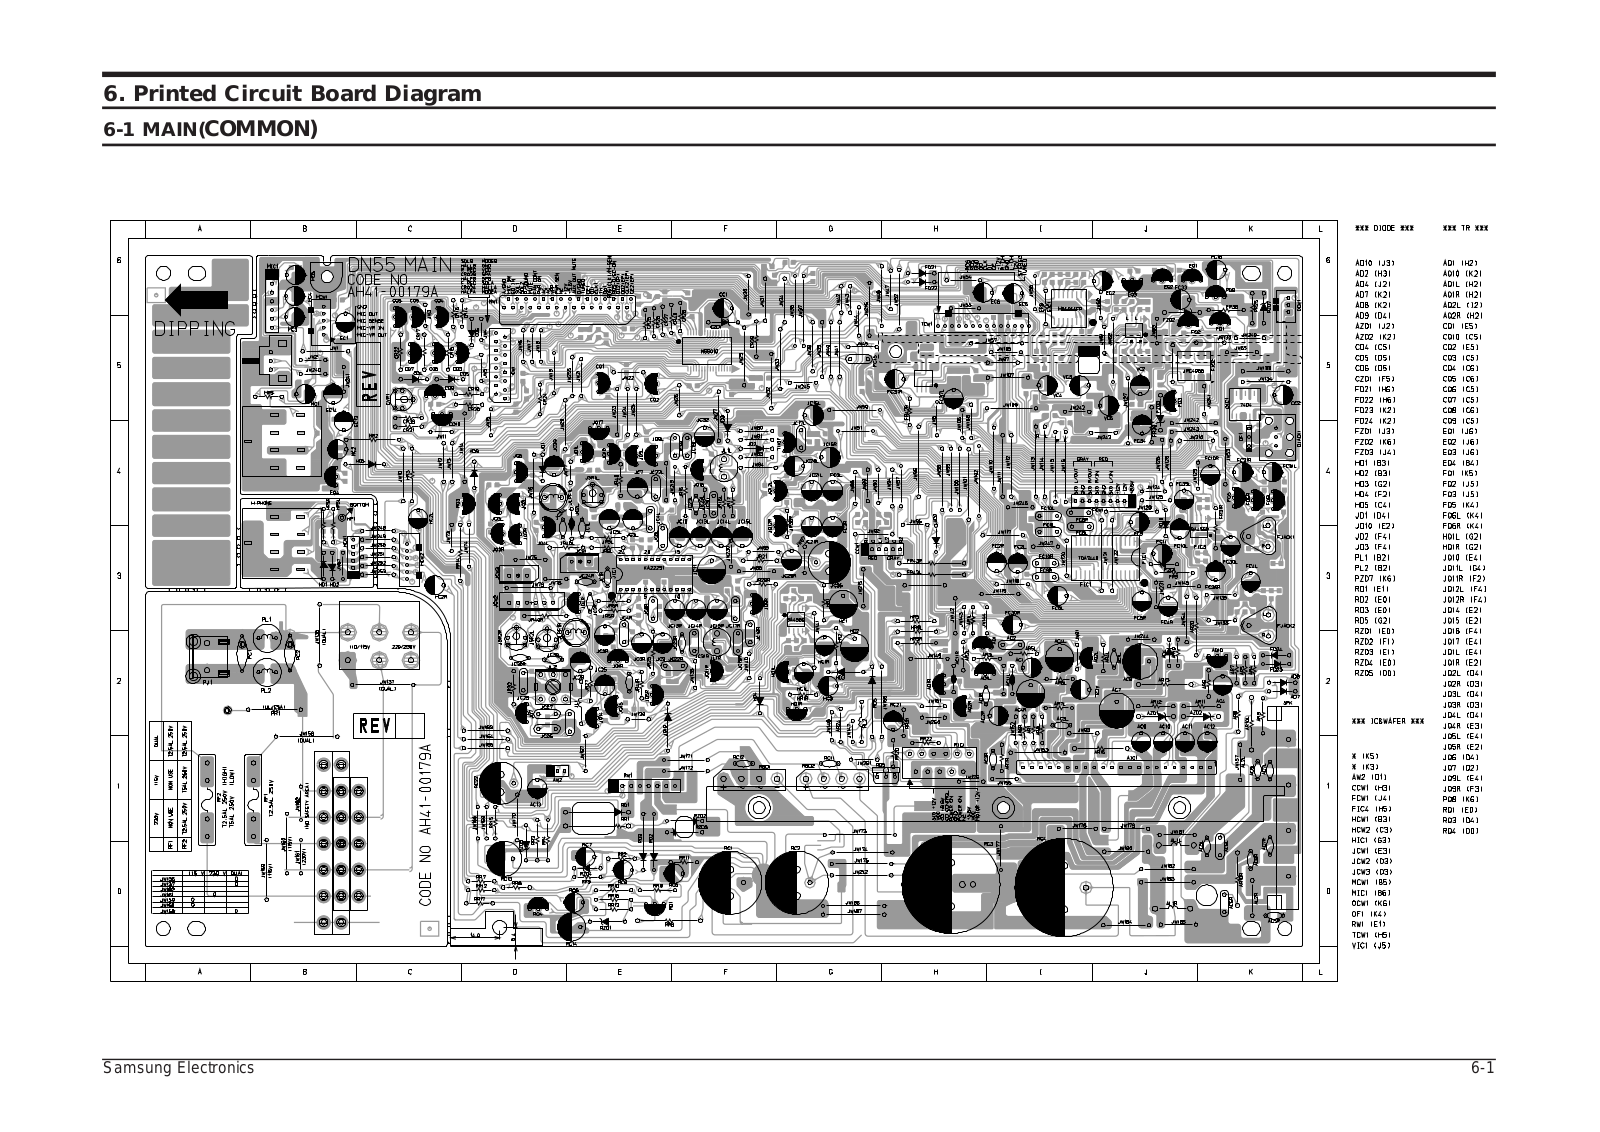 SAMSUNG MAX-DN55QH, MAX-DN67QH, MAX-DN65RH Printed Circuit Board Diagram